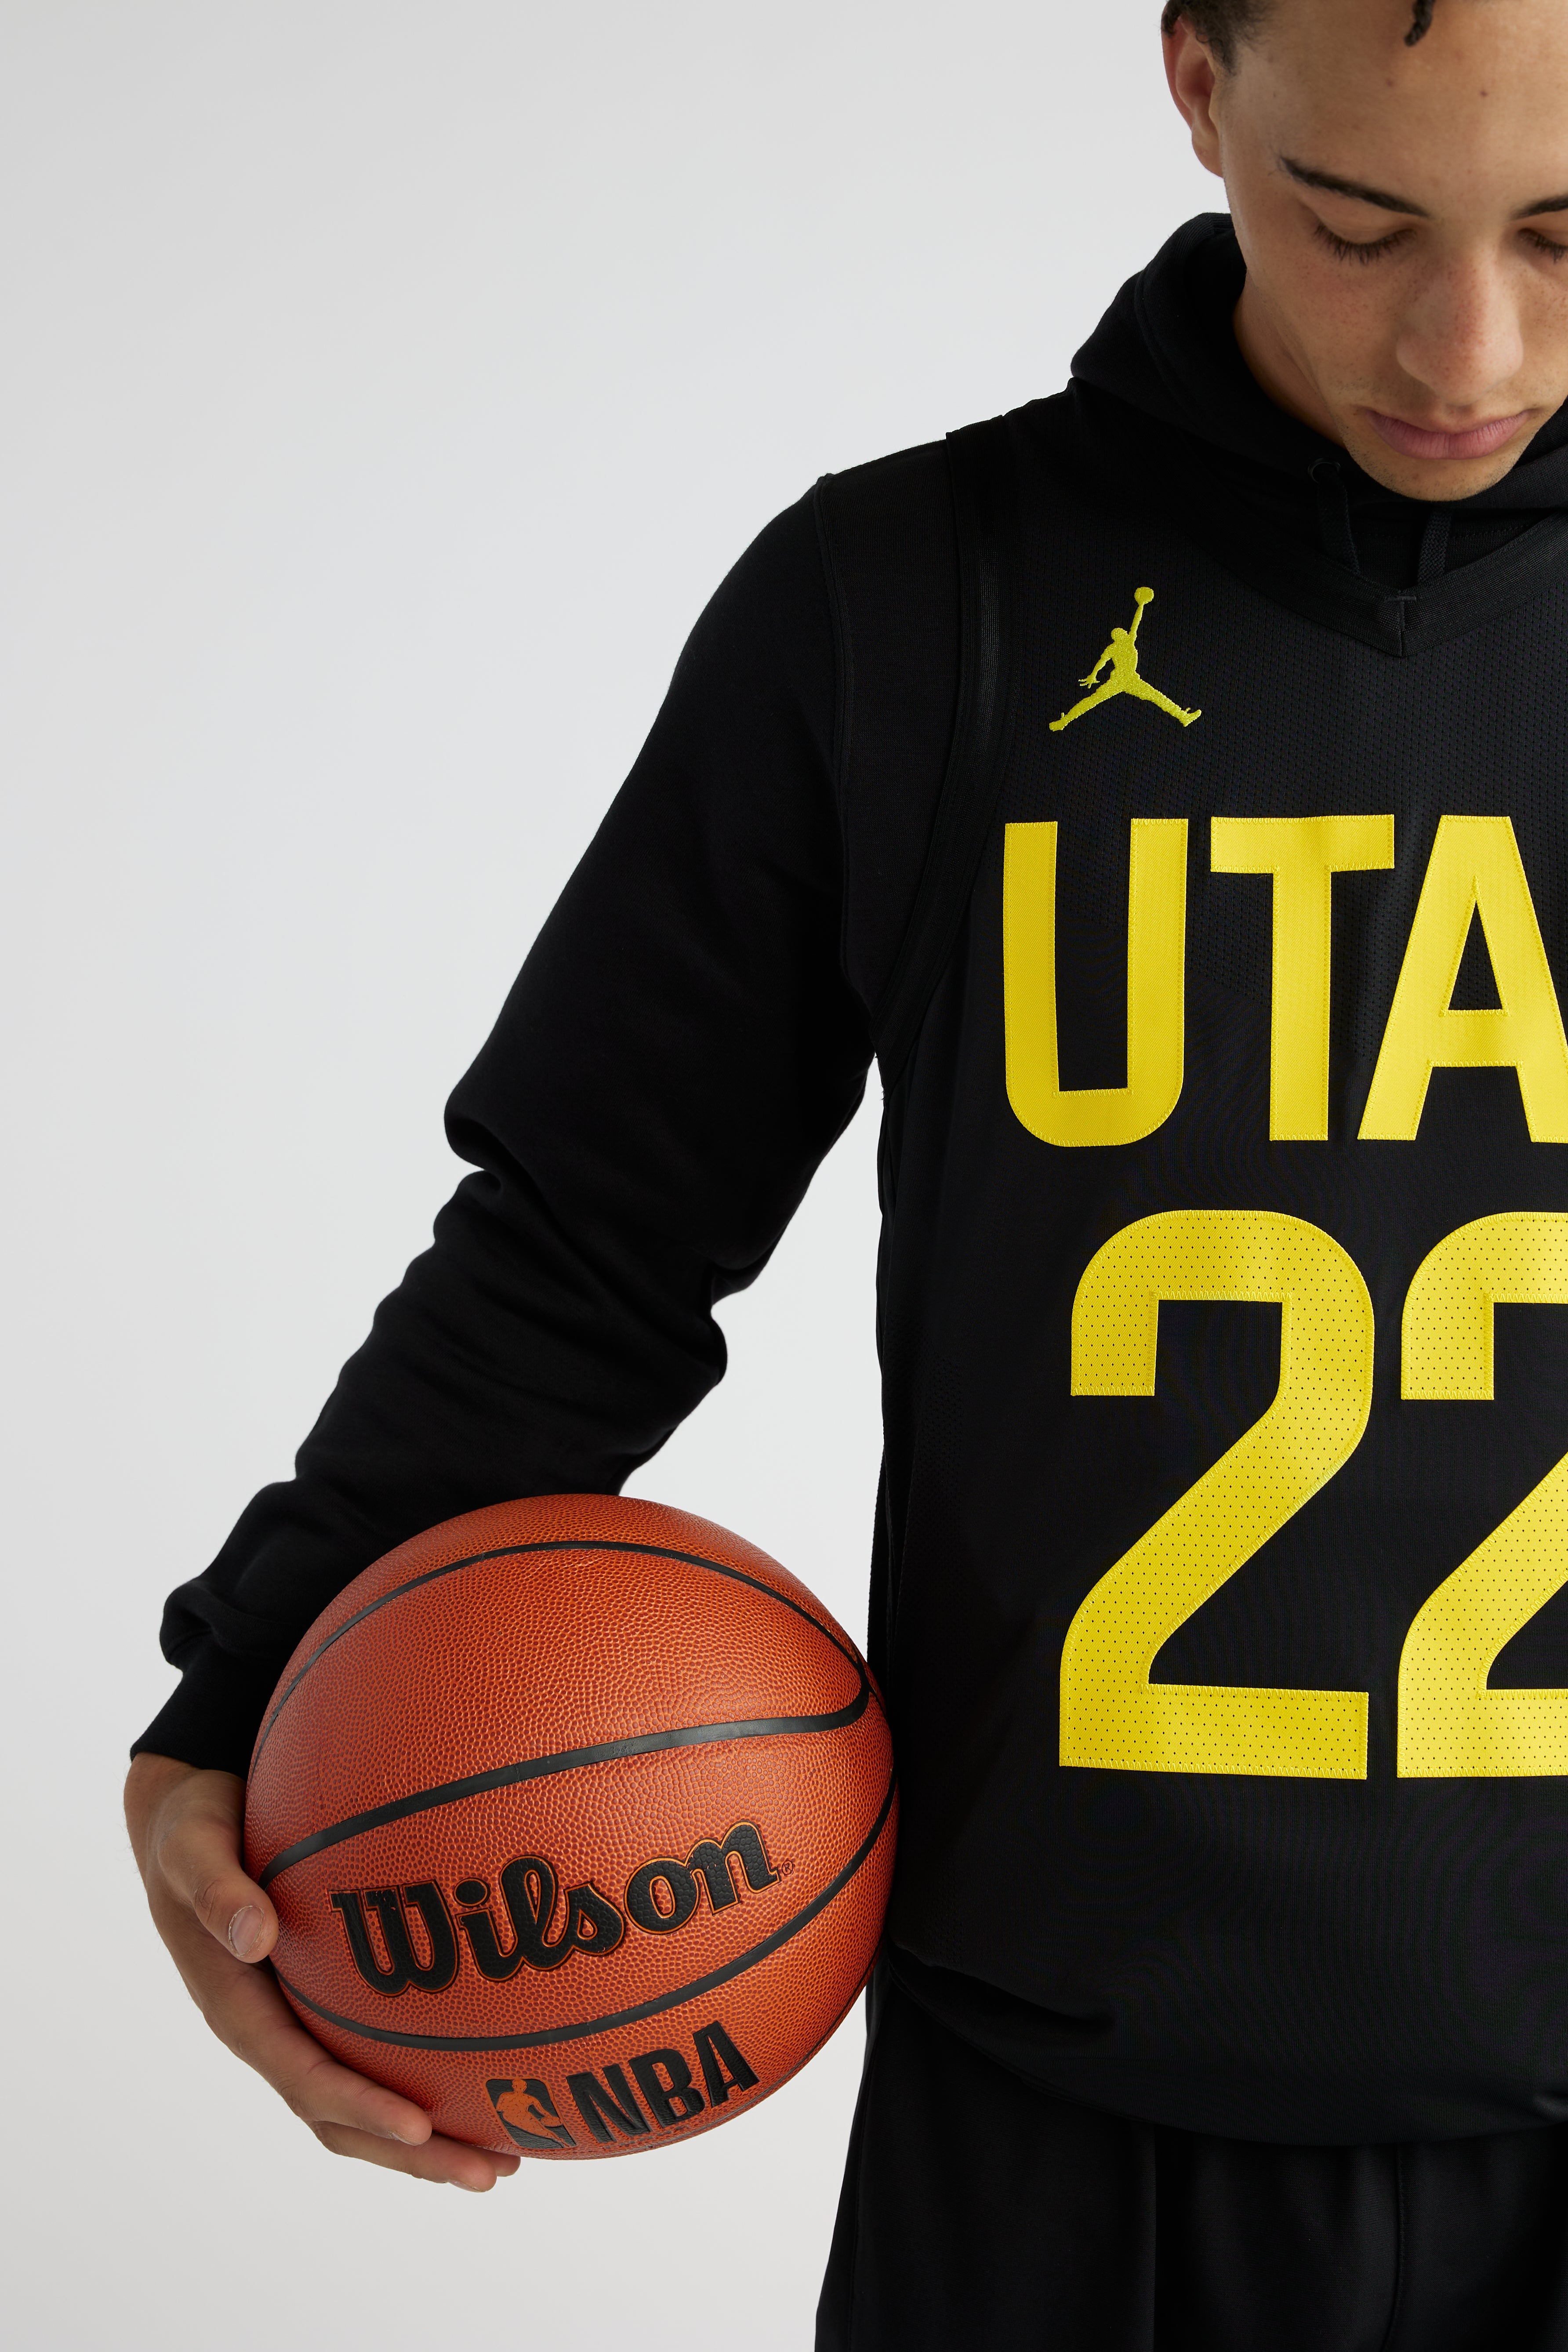 Mens – Utah Jazz Team Store